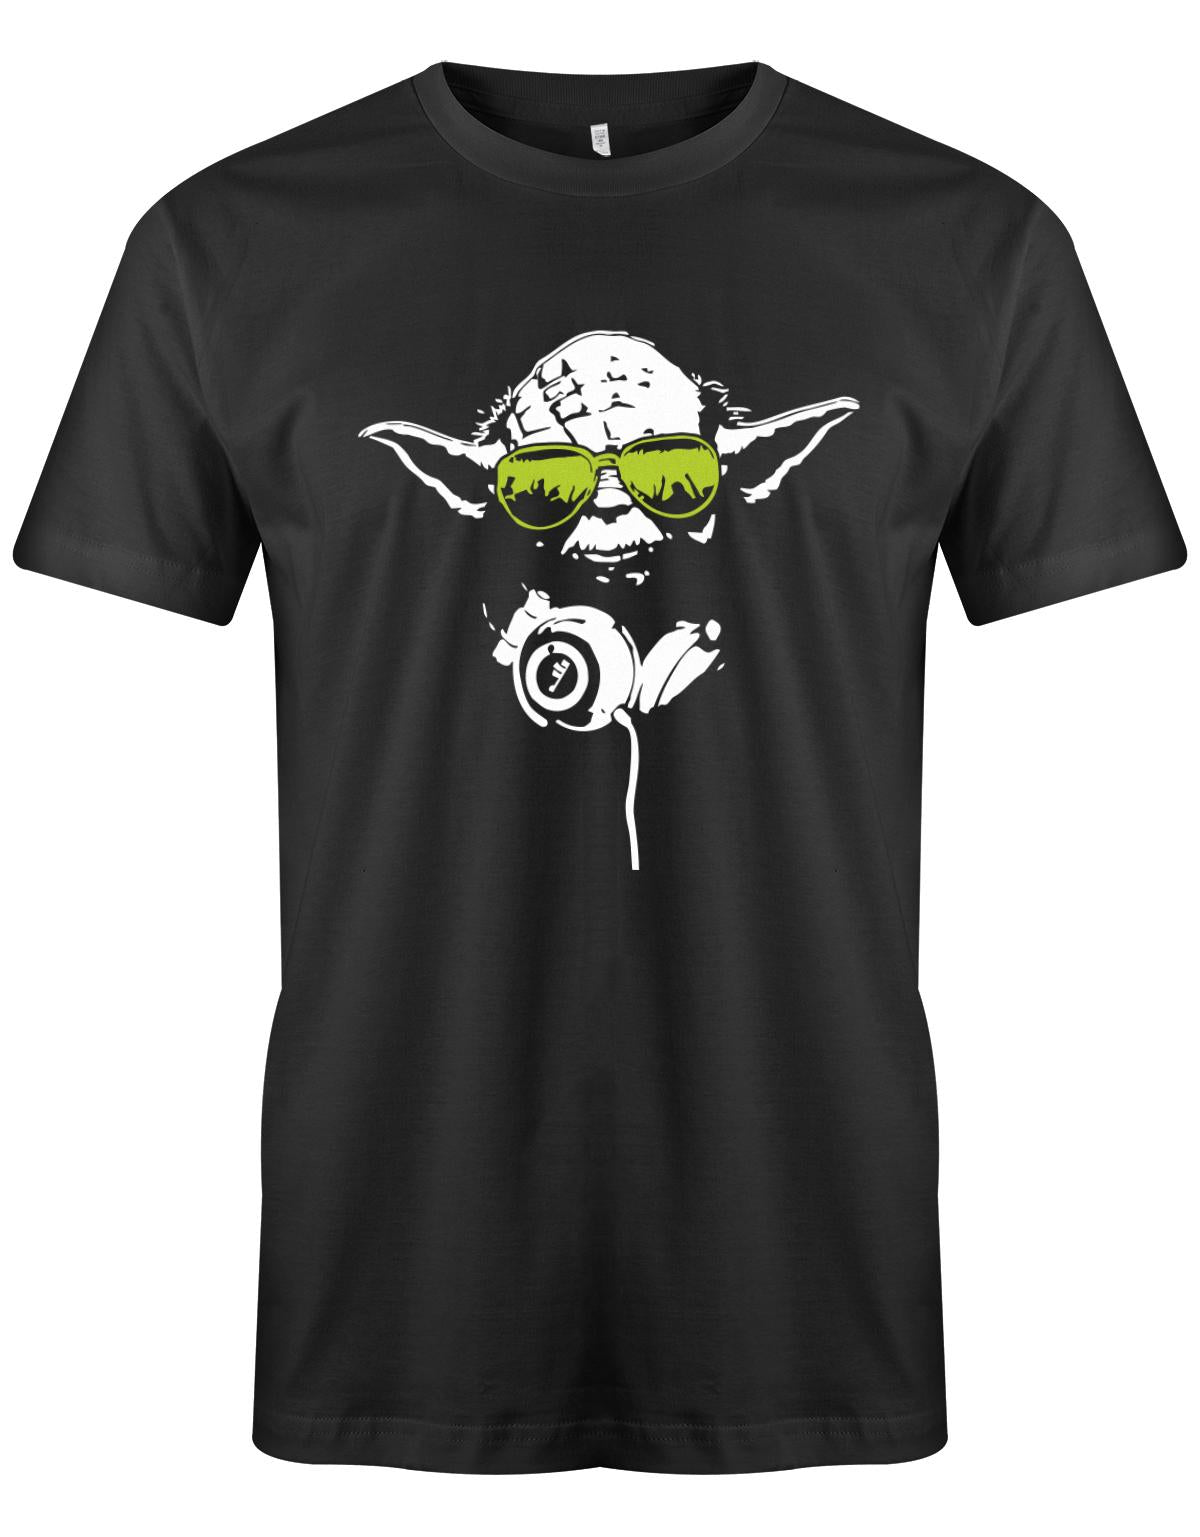 DJ-Yoda-Herren-Shirt-Schwarz